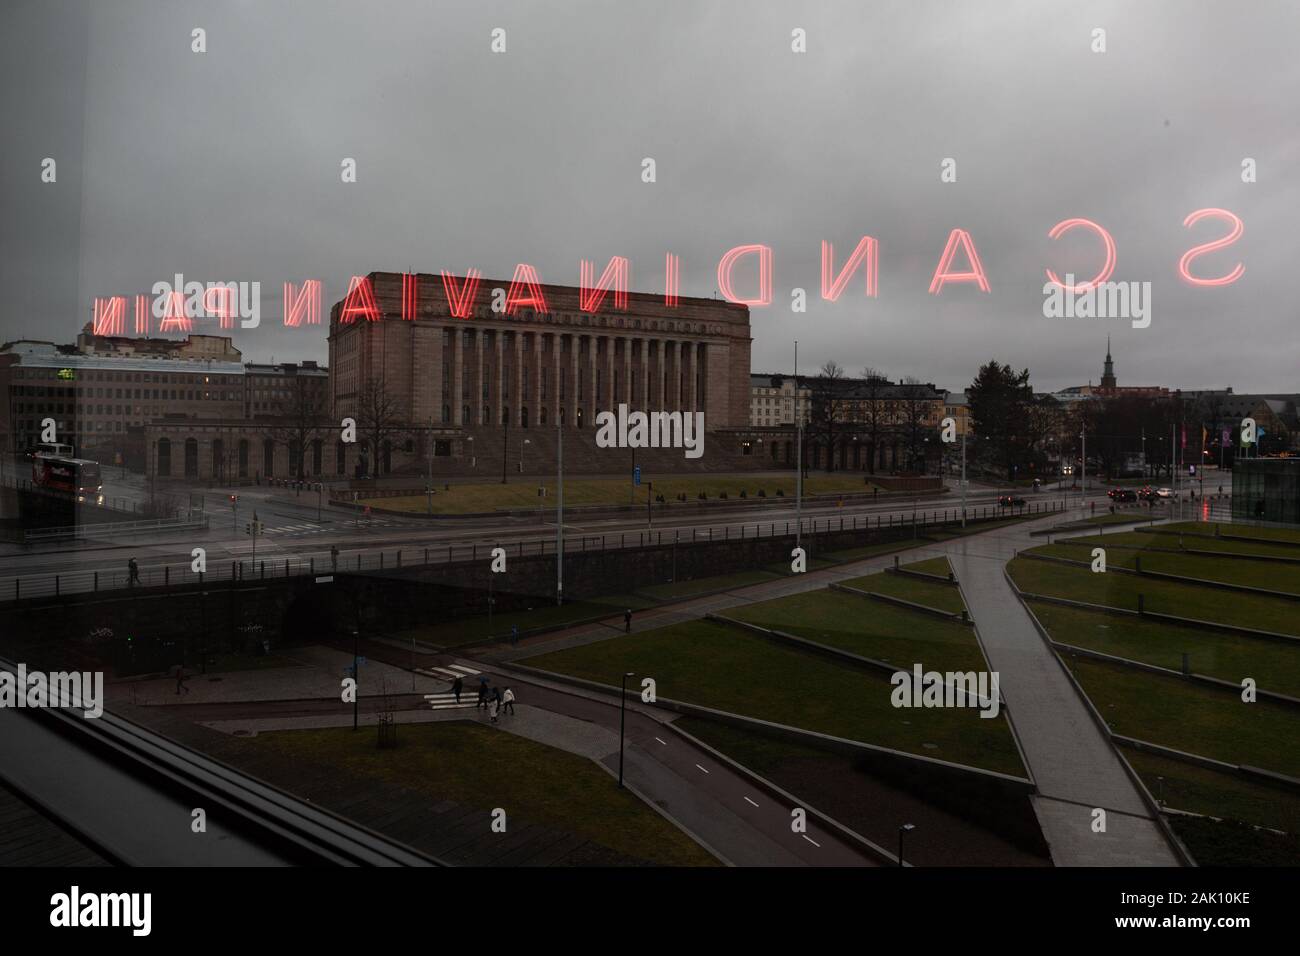 Skandinavische Schmerz - neon Artwork von Ragnar Kjartansson von Kiasma Museum für zeitgenössische Kunst Fenster über das Parlament Finnlands widerspiegelt Stockfoto